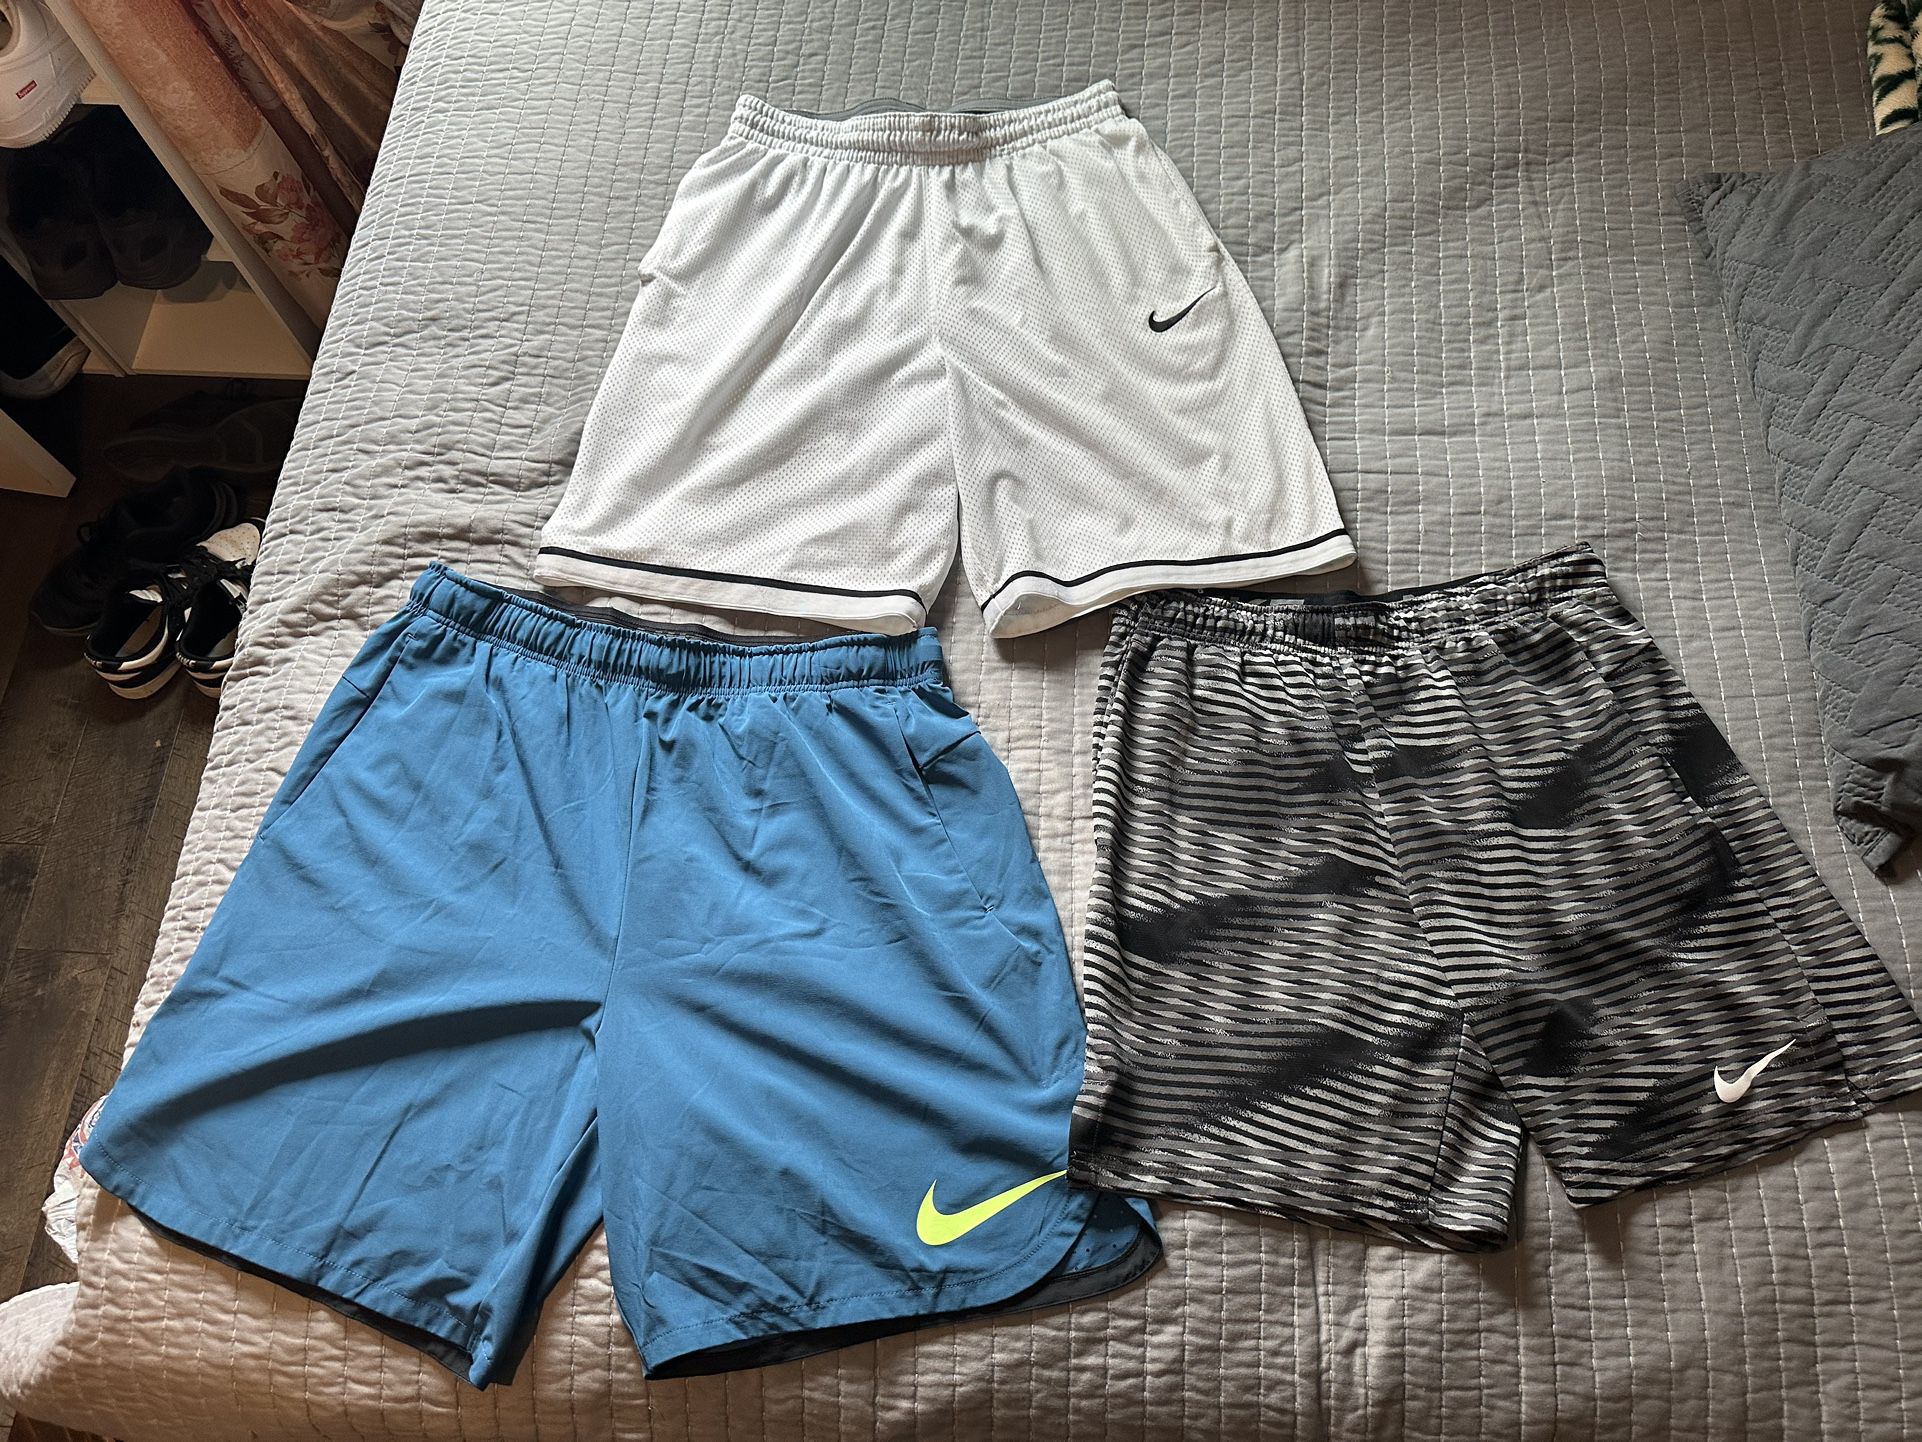 Nike Shorts and Shirts